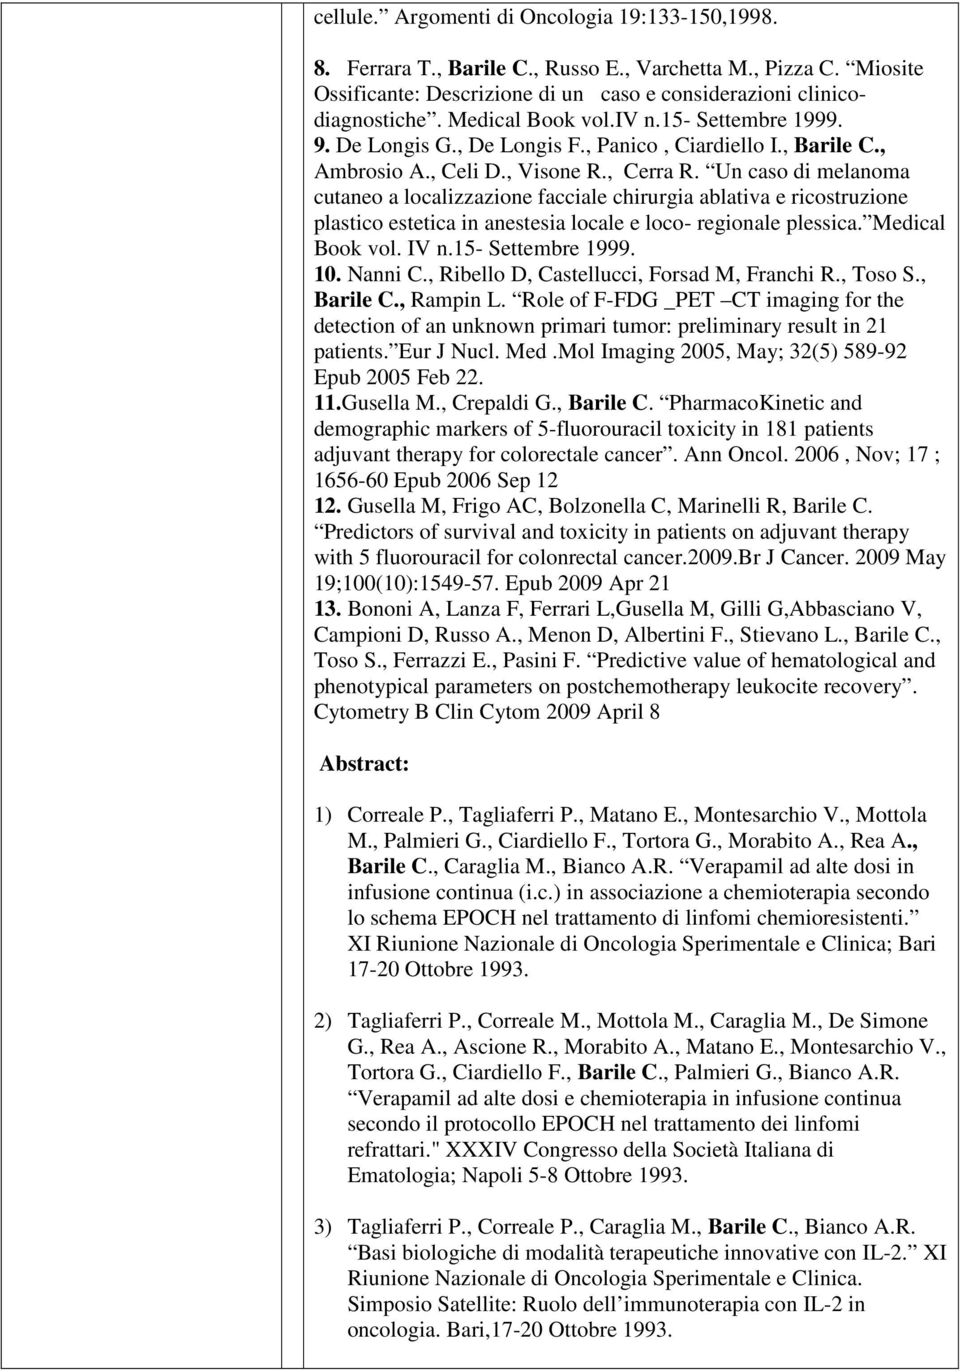 Un caso di melanoma cutaneo a localizzazione facciale chirurgia ablativa e ricostruzione plastico estetica in anestesia locale e loco- regionale plessica. Medical Book vol. IV n.15- Settembre 1999.